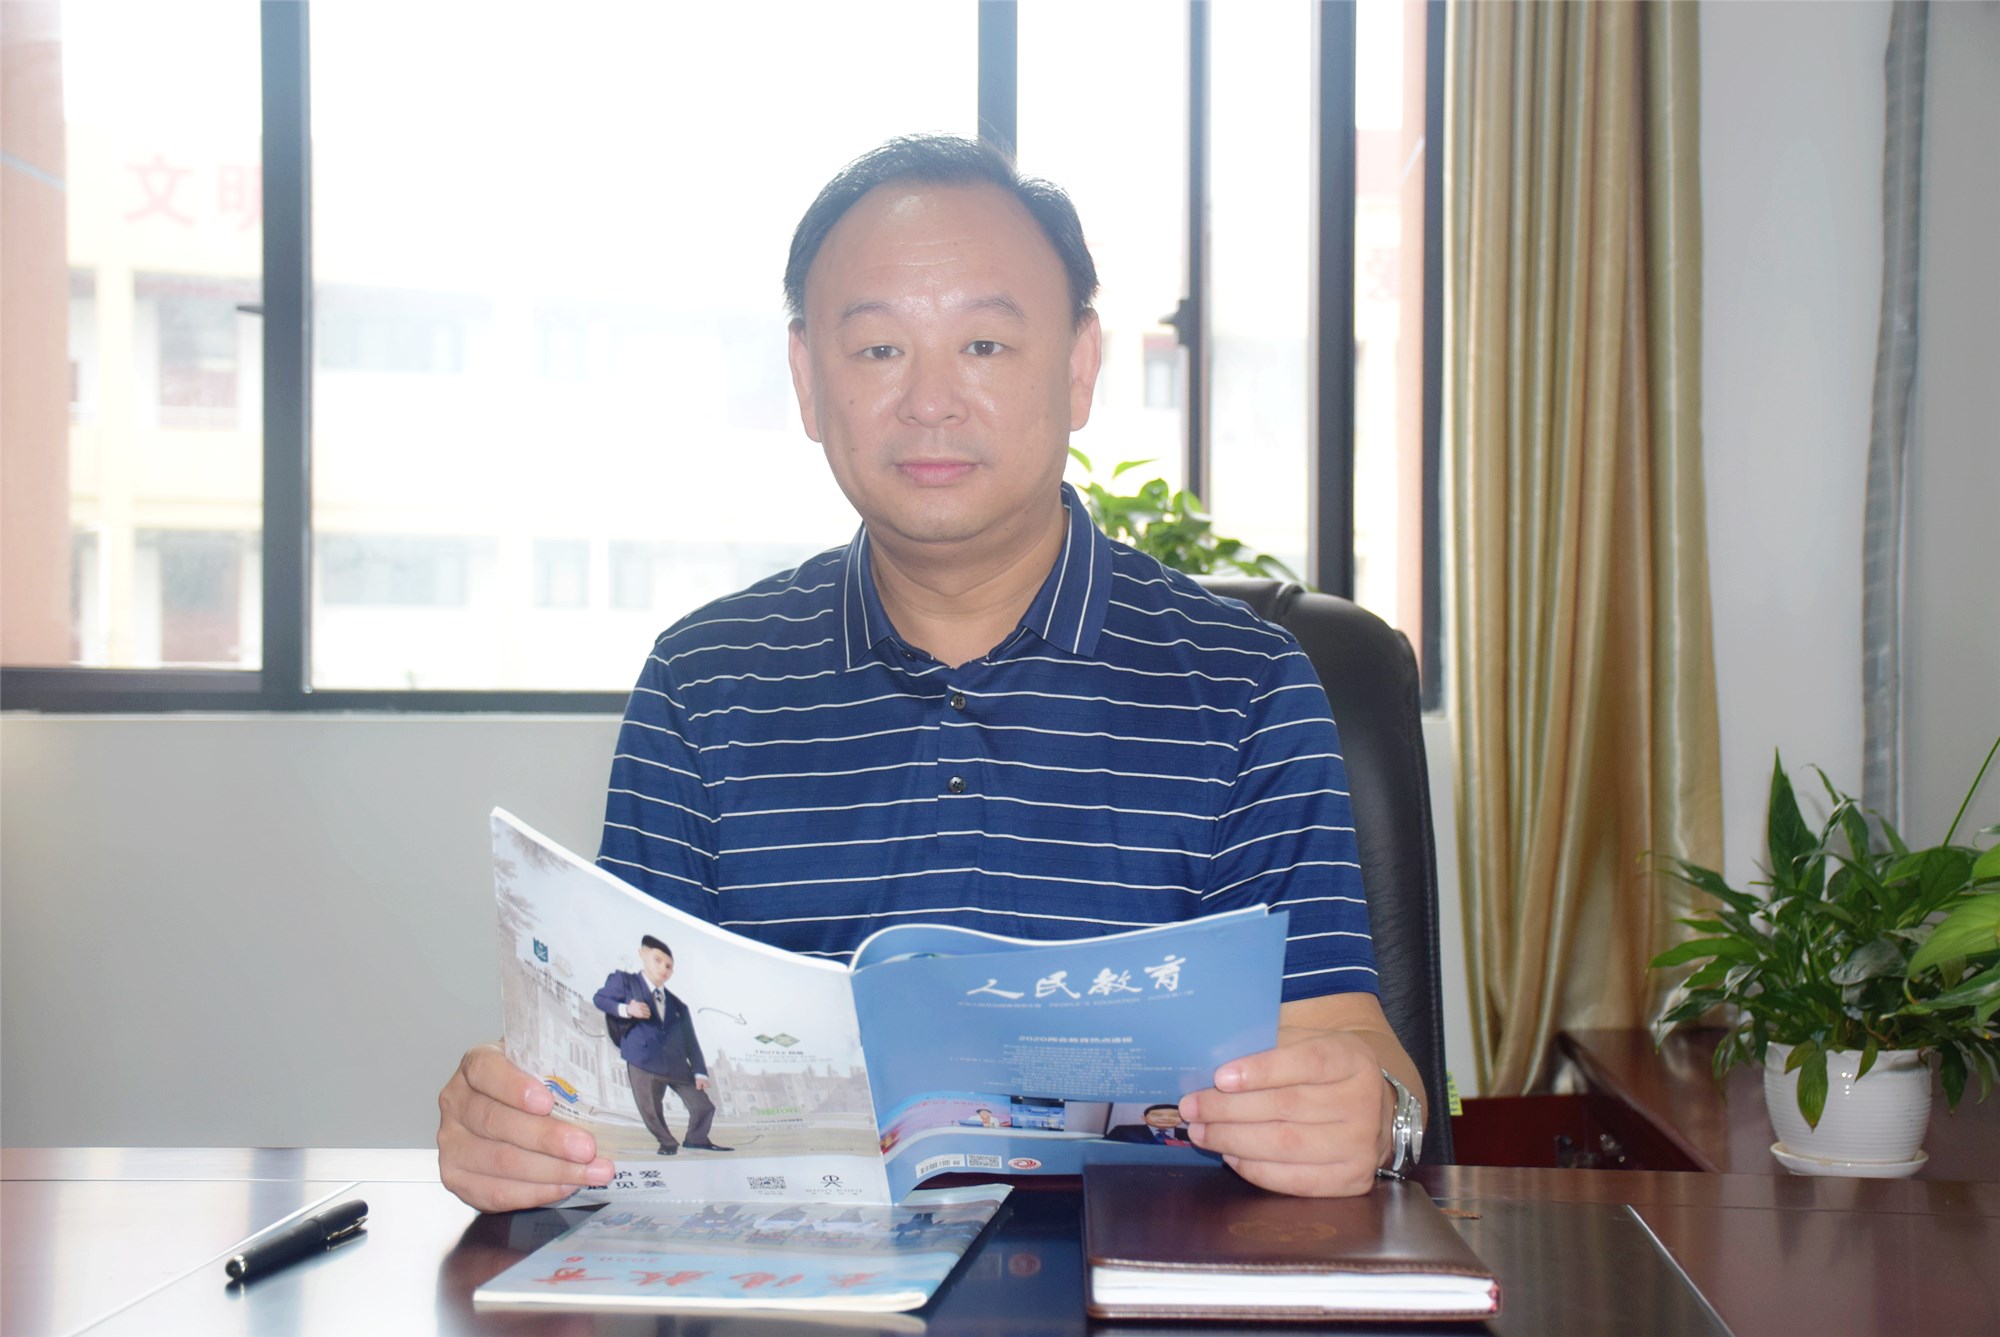 张东,男,1968年9月出生,2020年6月任襄阳三中副校长